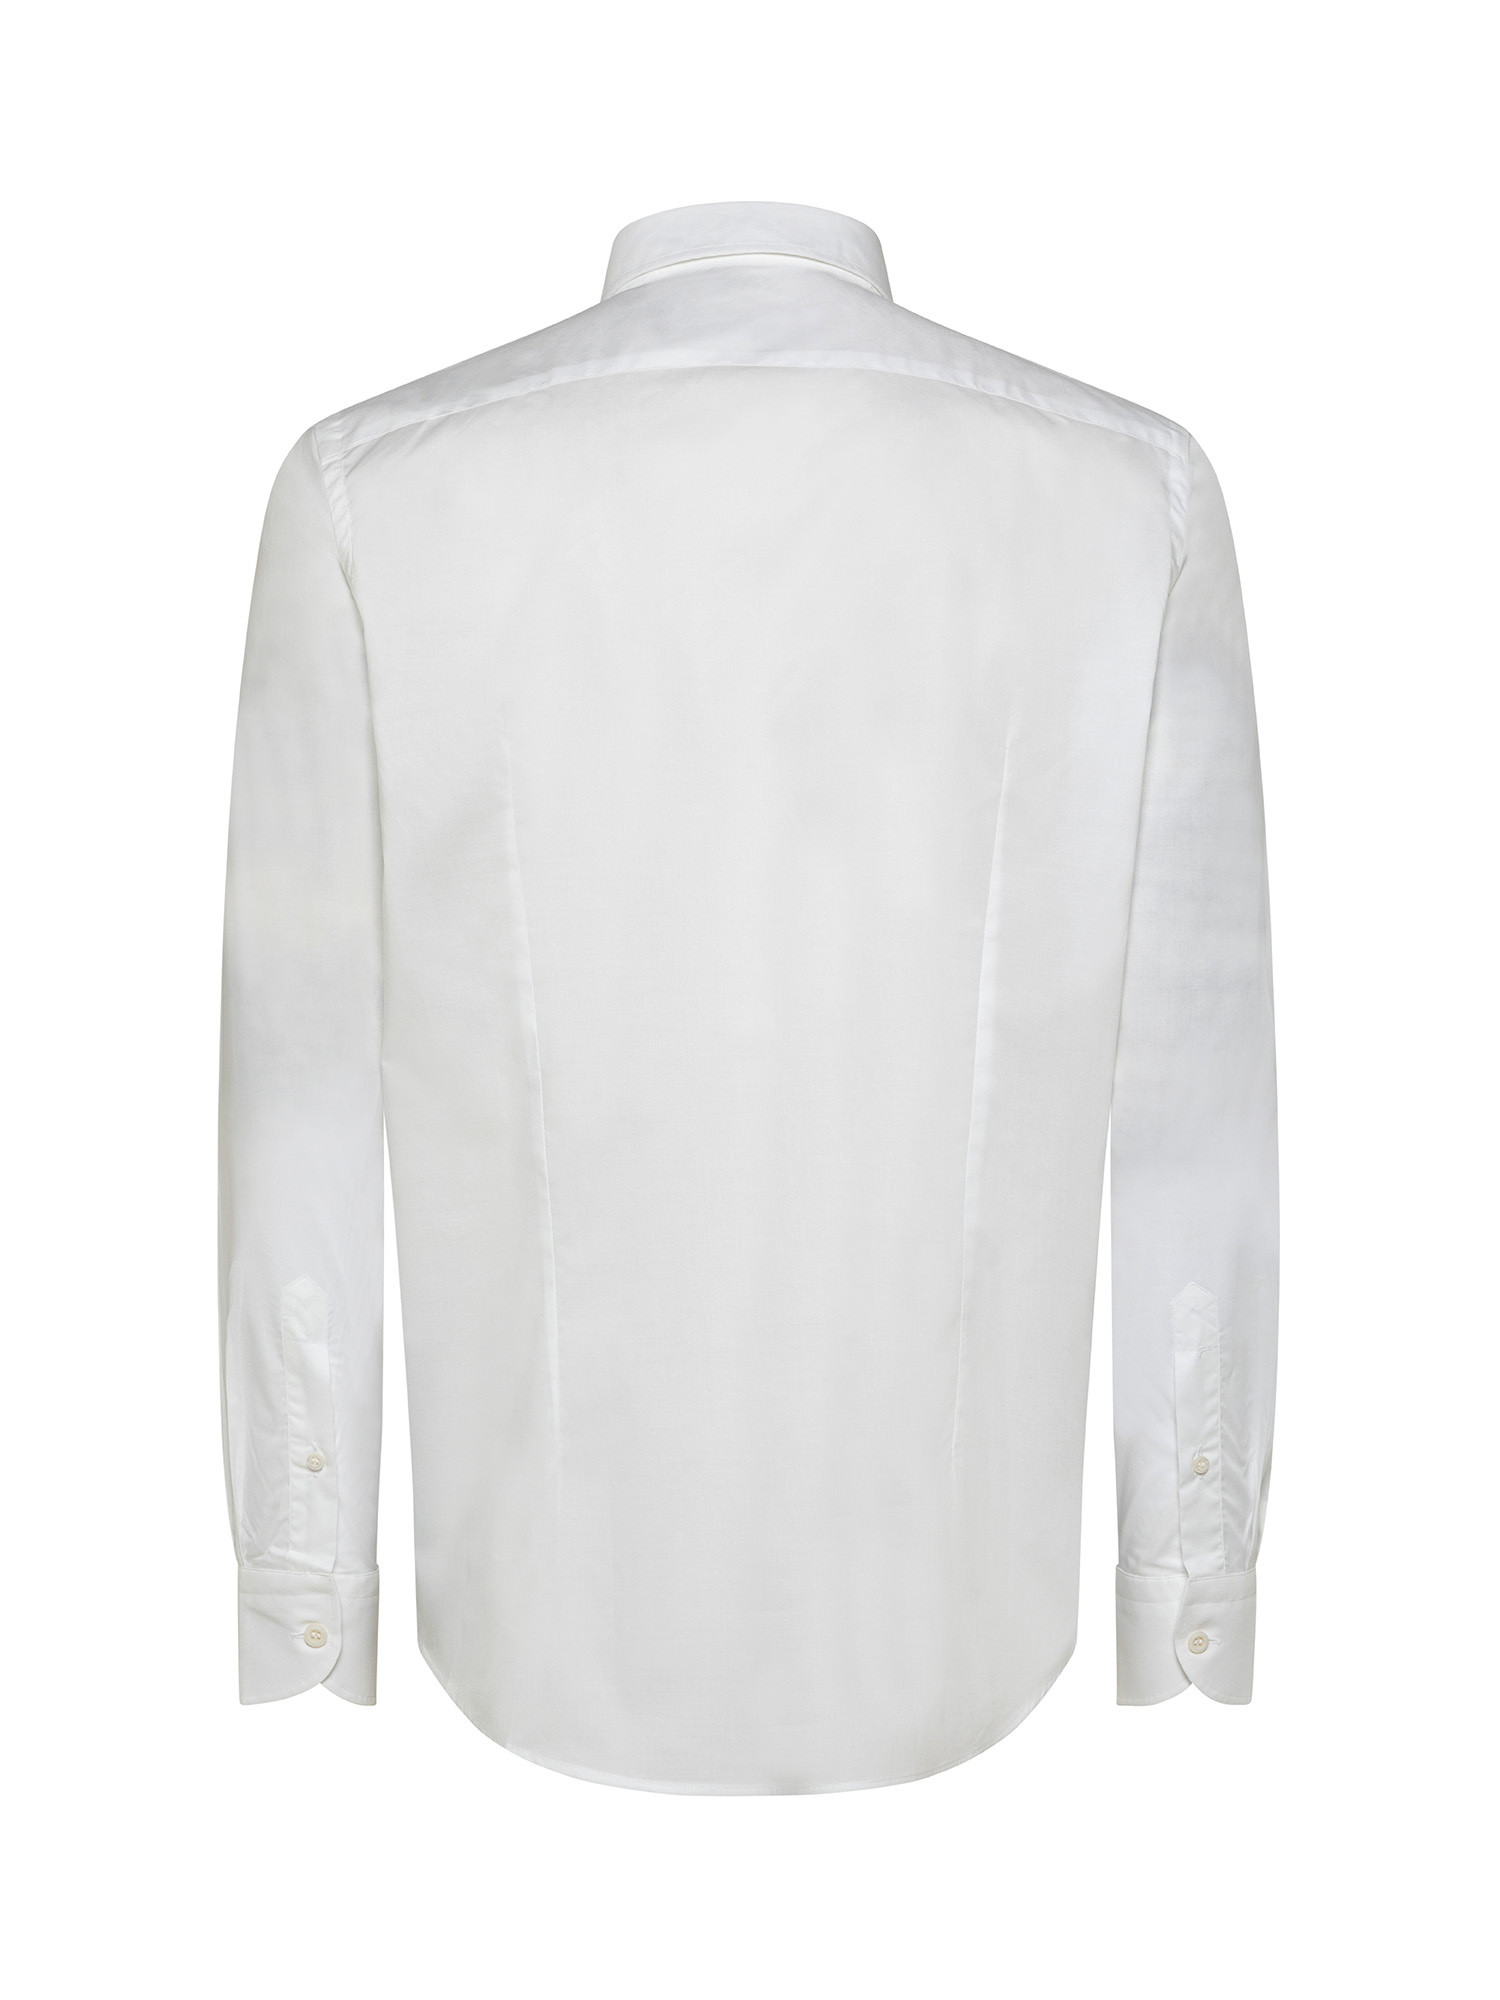 Camicia slim fit in cotone elasticizzato, Bianco, large image number 2